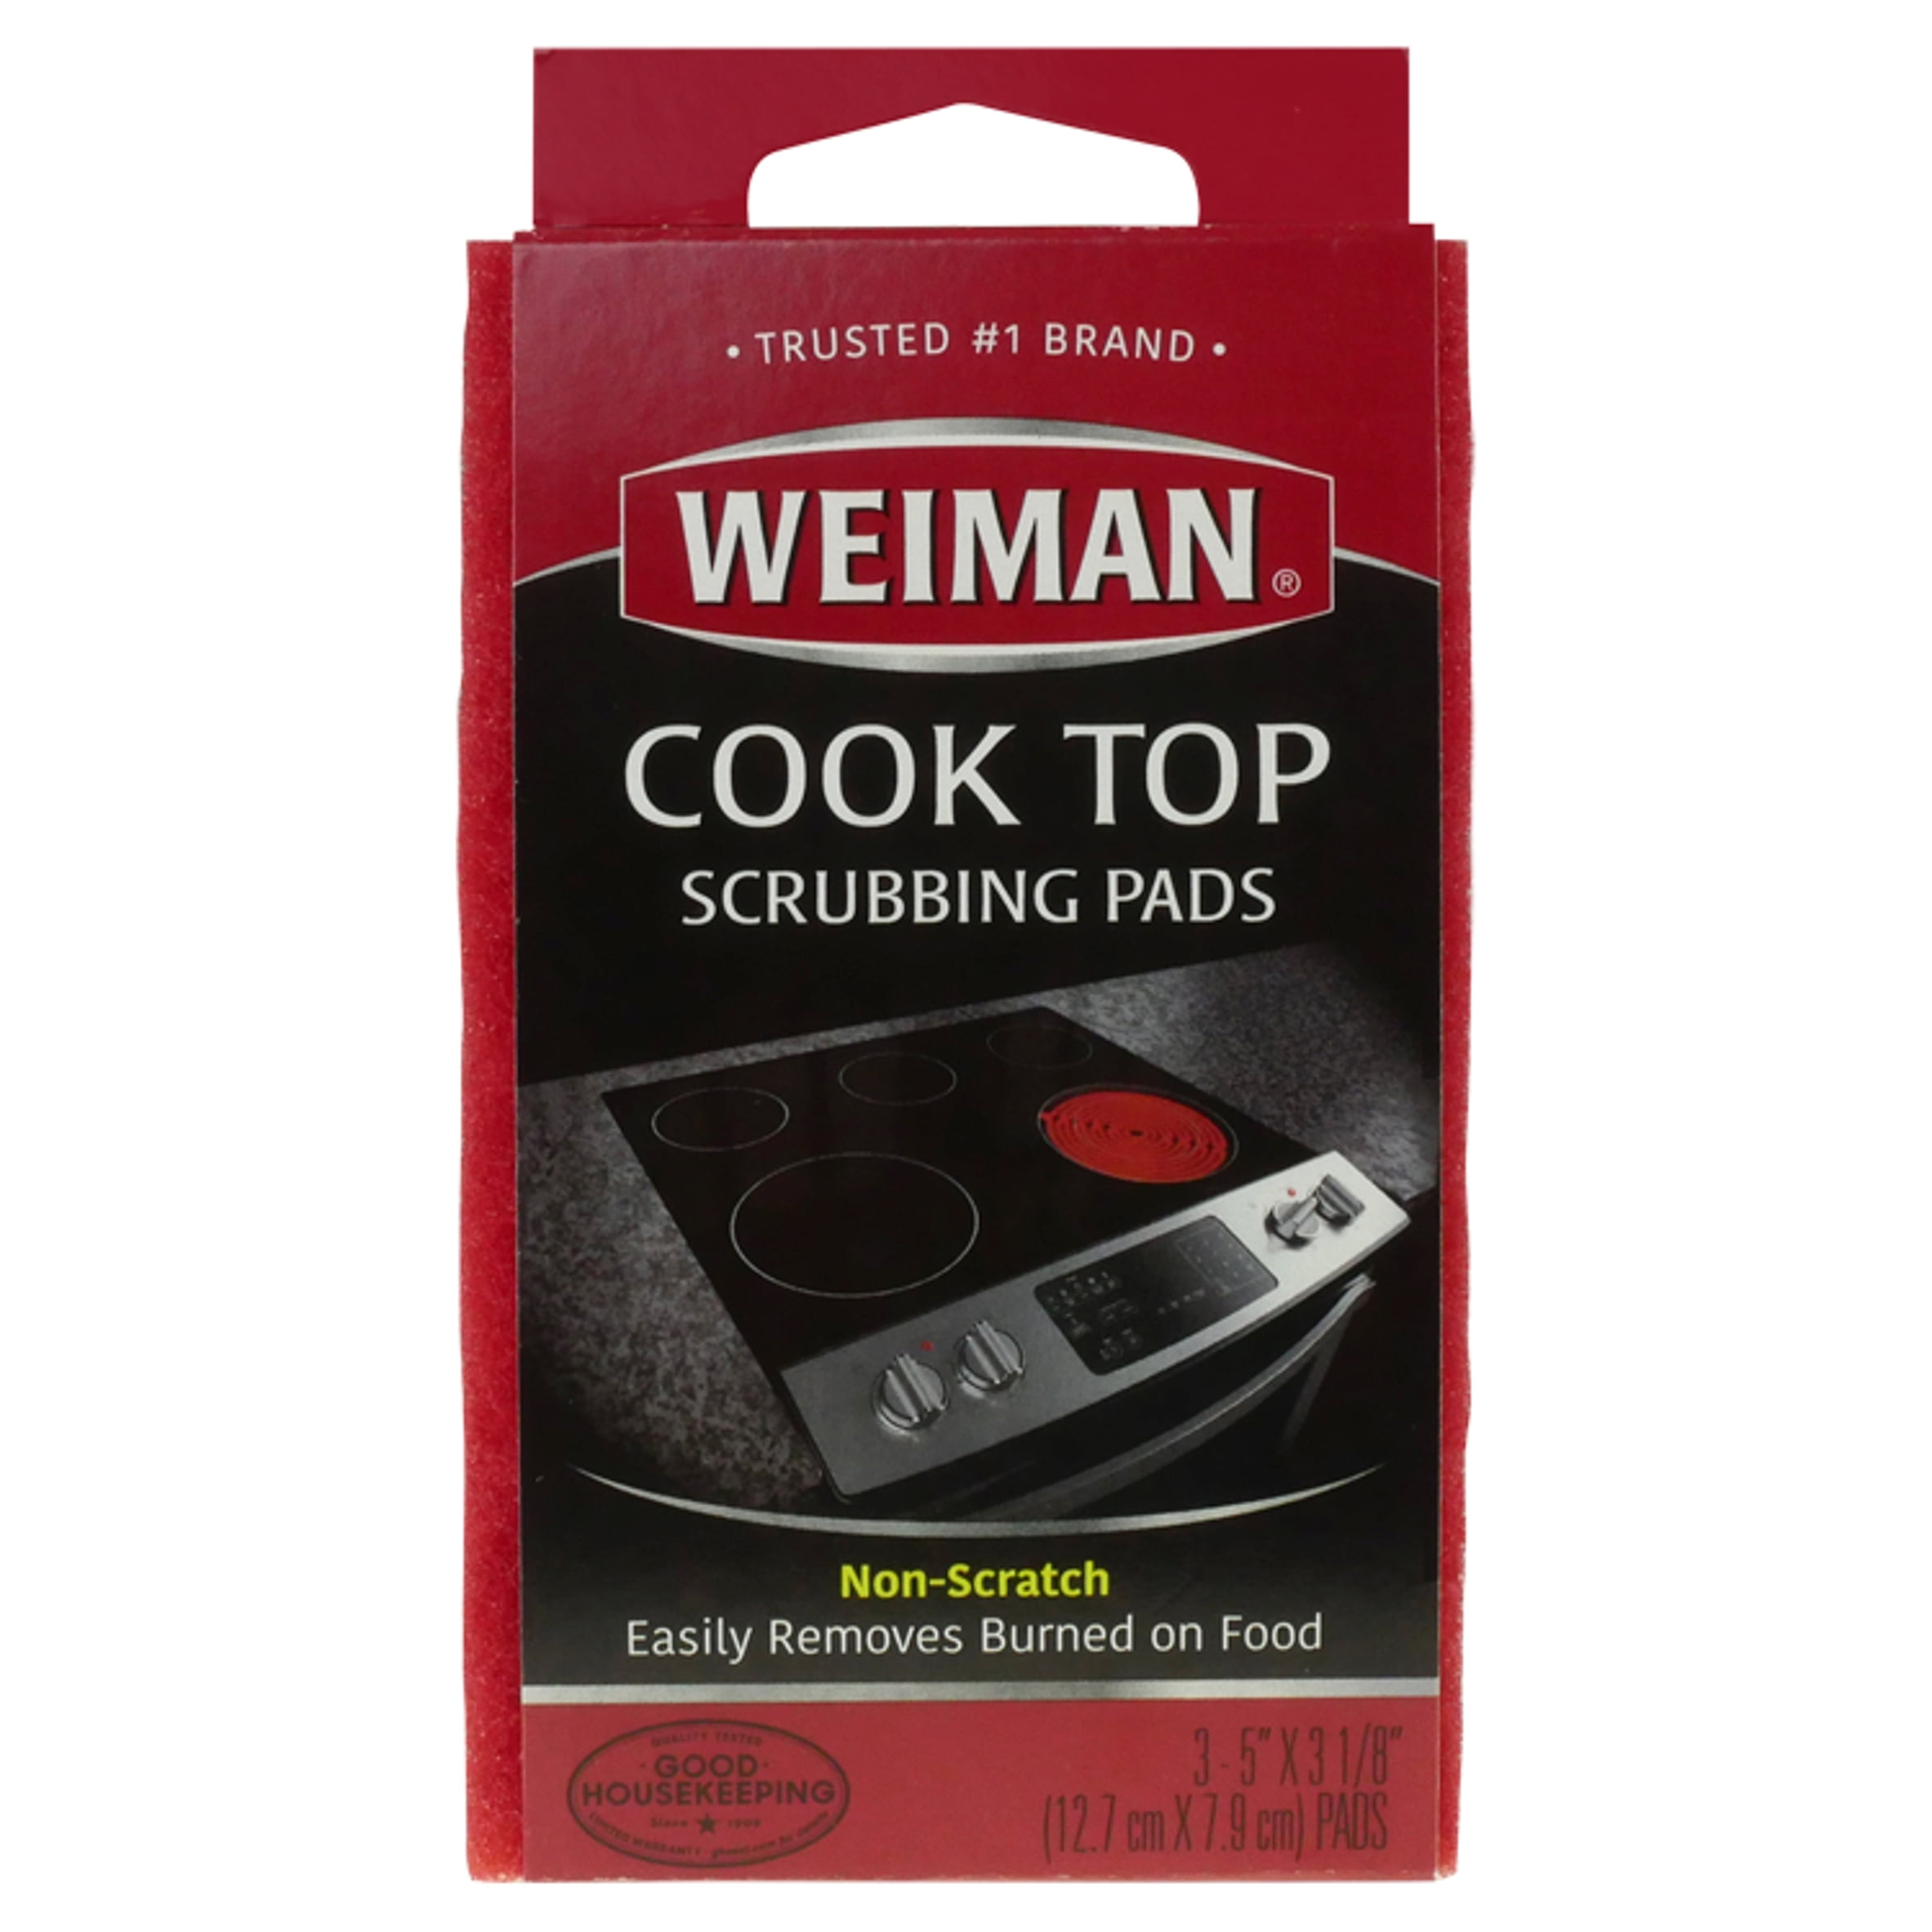 Weiman Cook Top Scrubbing Pads, 3 count